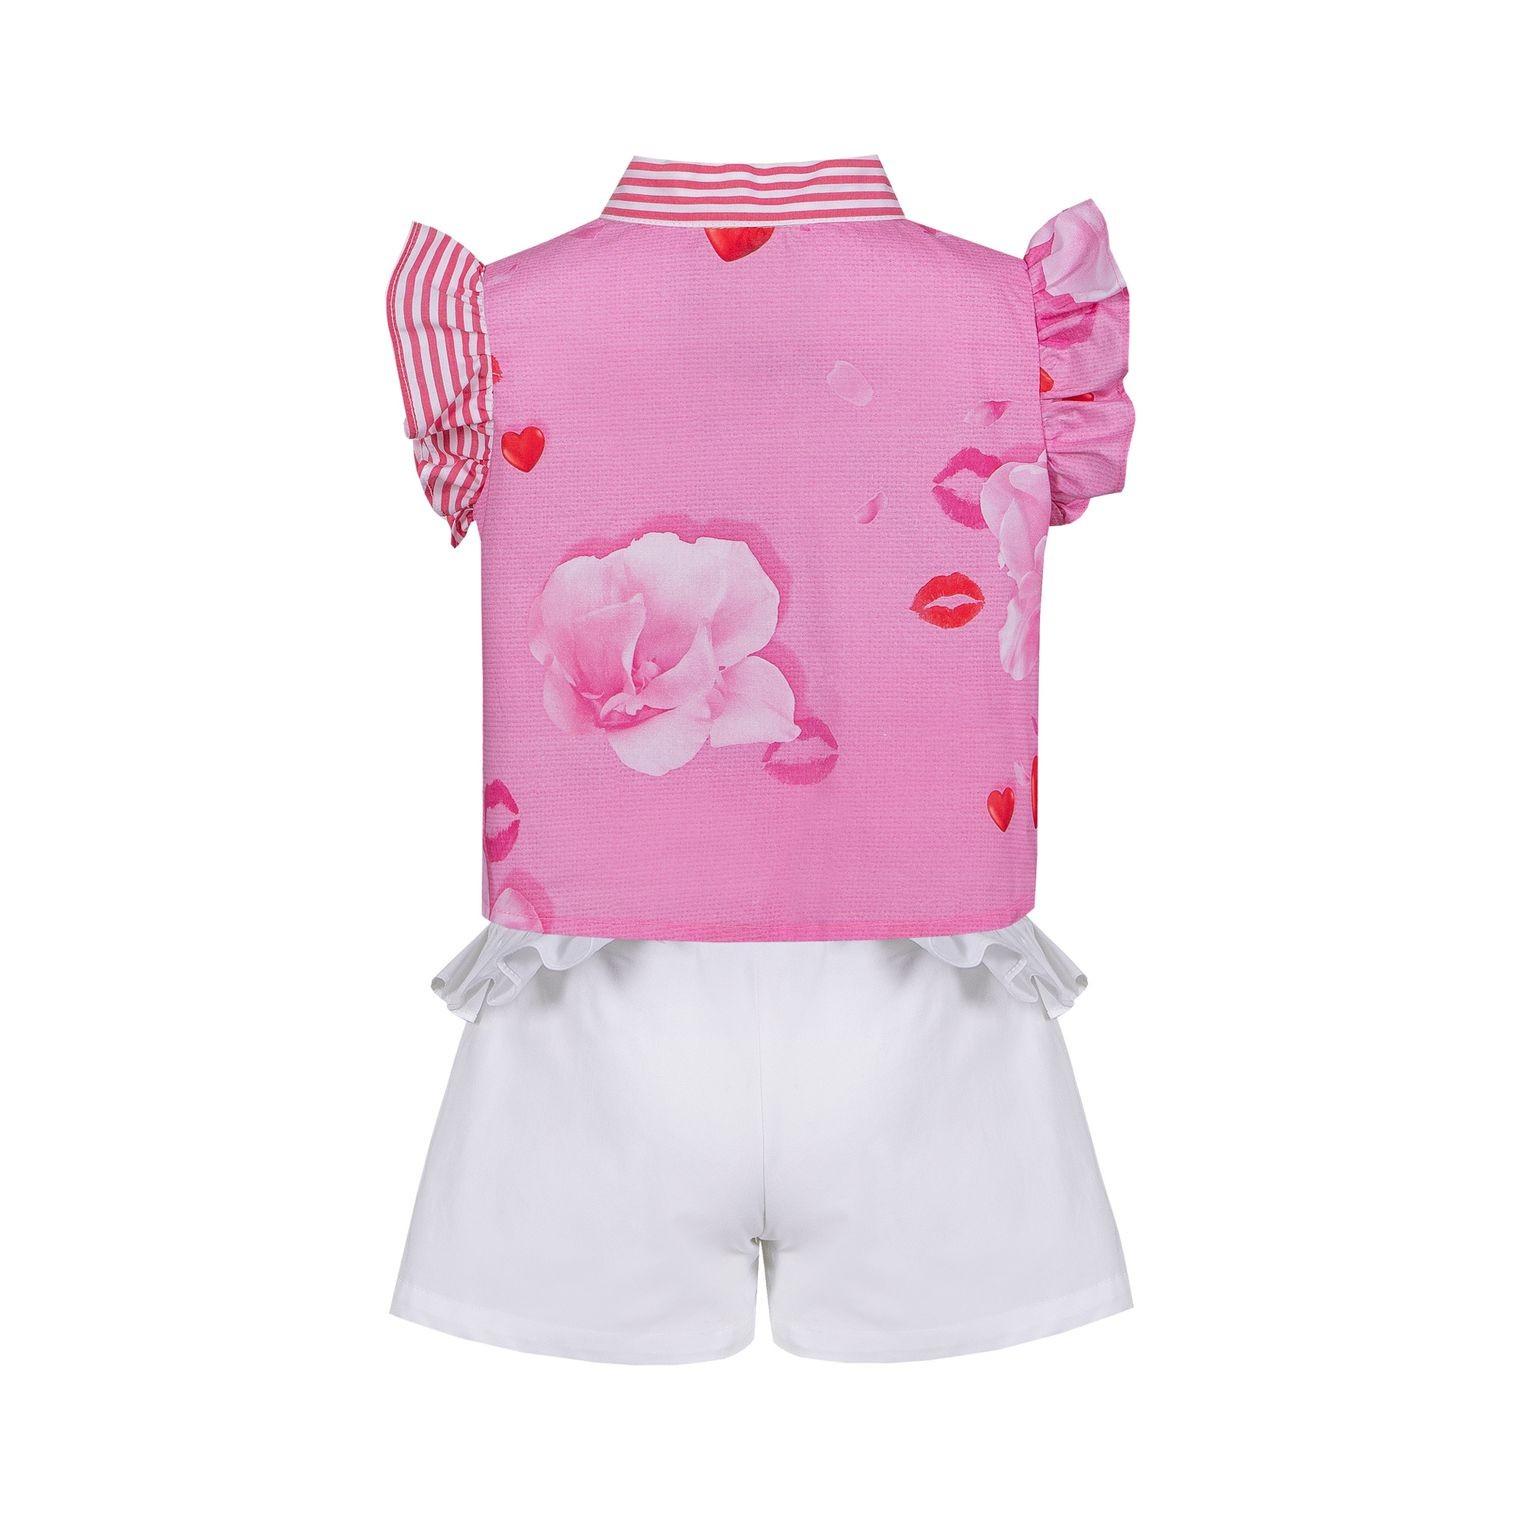 Lapin House - Setje - T-shirt - short - roze - hartjes - streepjes